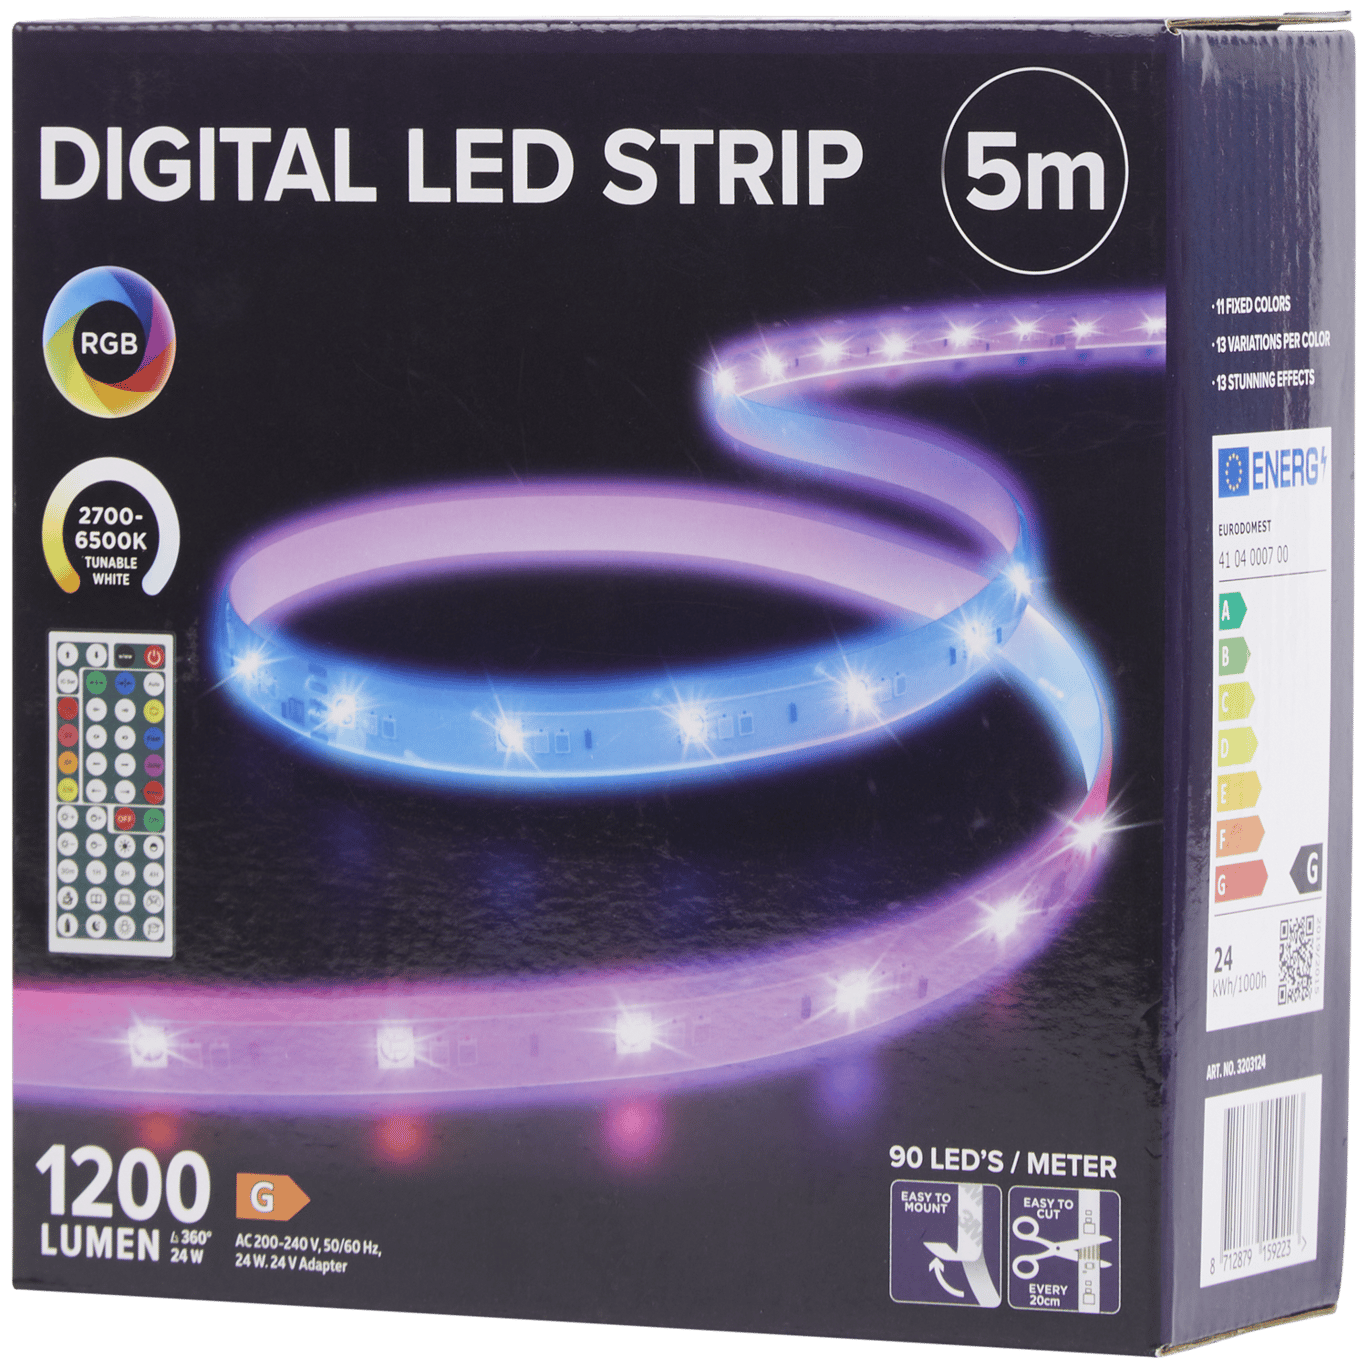 Deco LED Eclairage - L'harmonie de l'ambiance lumineuse à économie